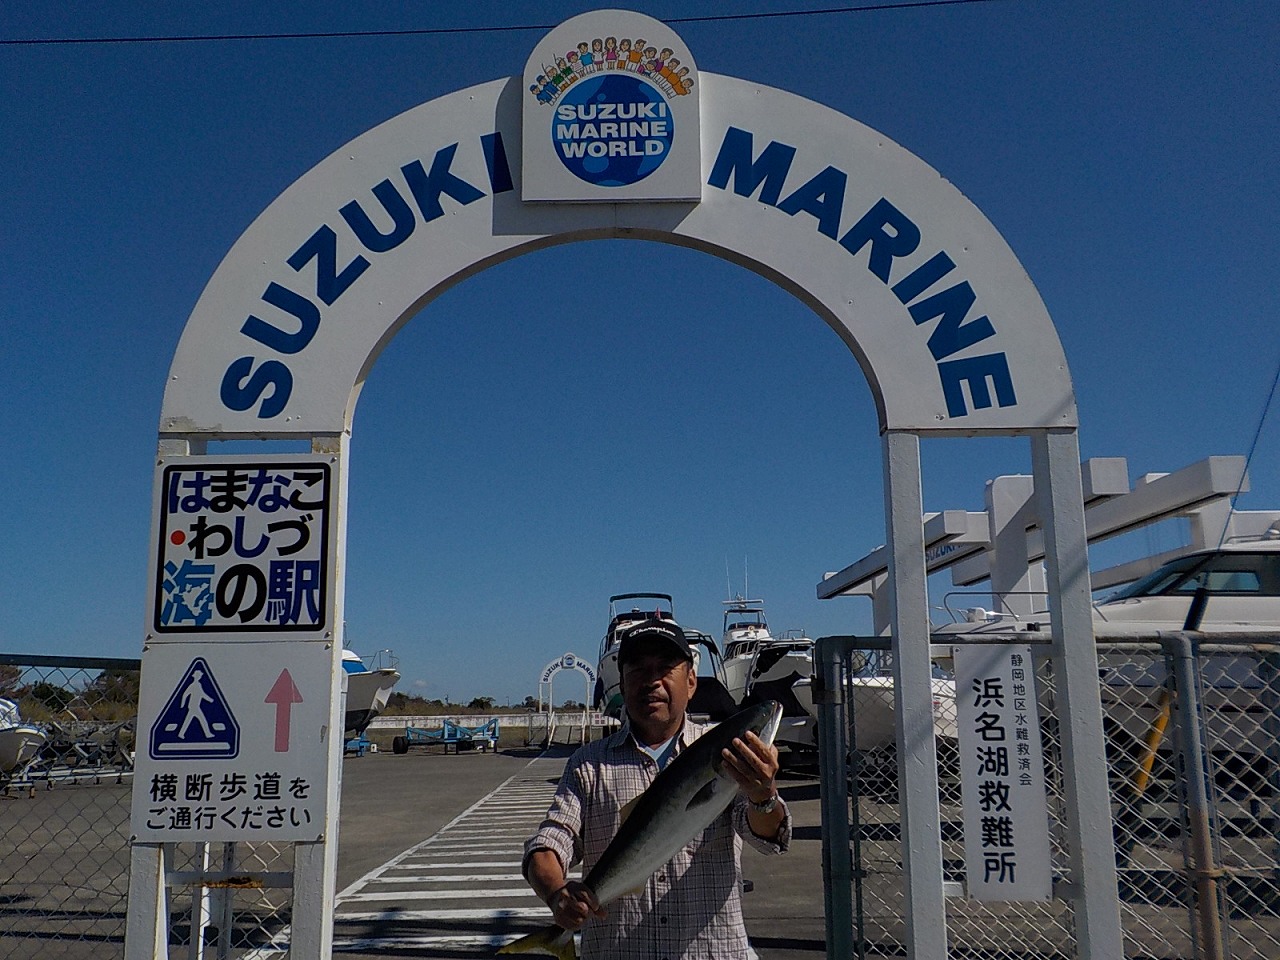 http://www.suzukimarine.co.jp/marina/hamanako/blog/2018/10/21/img/DSCN9780.jpg